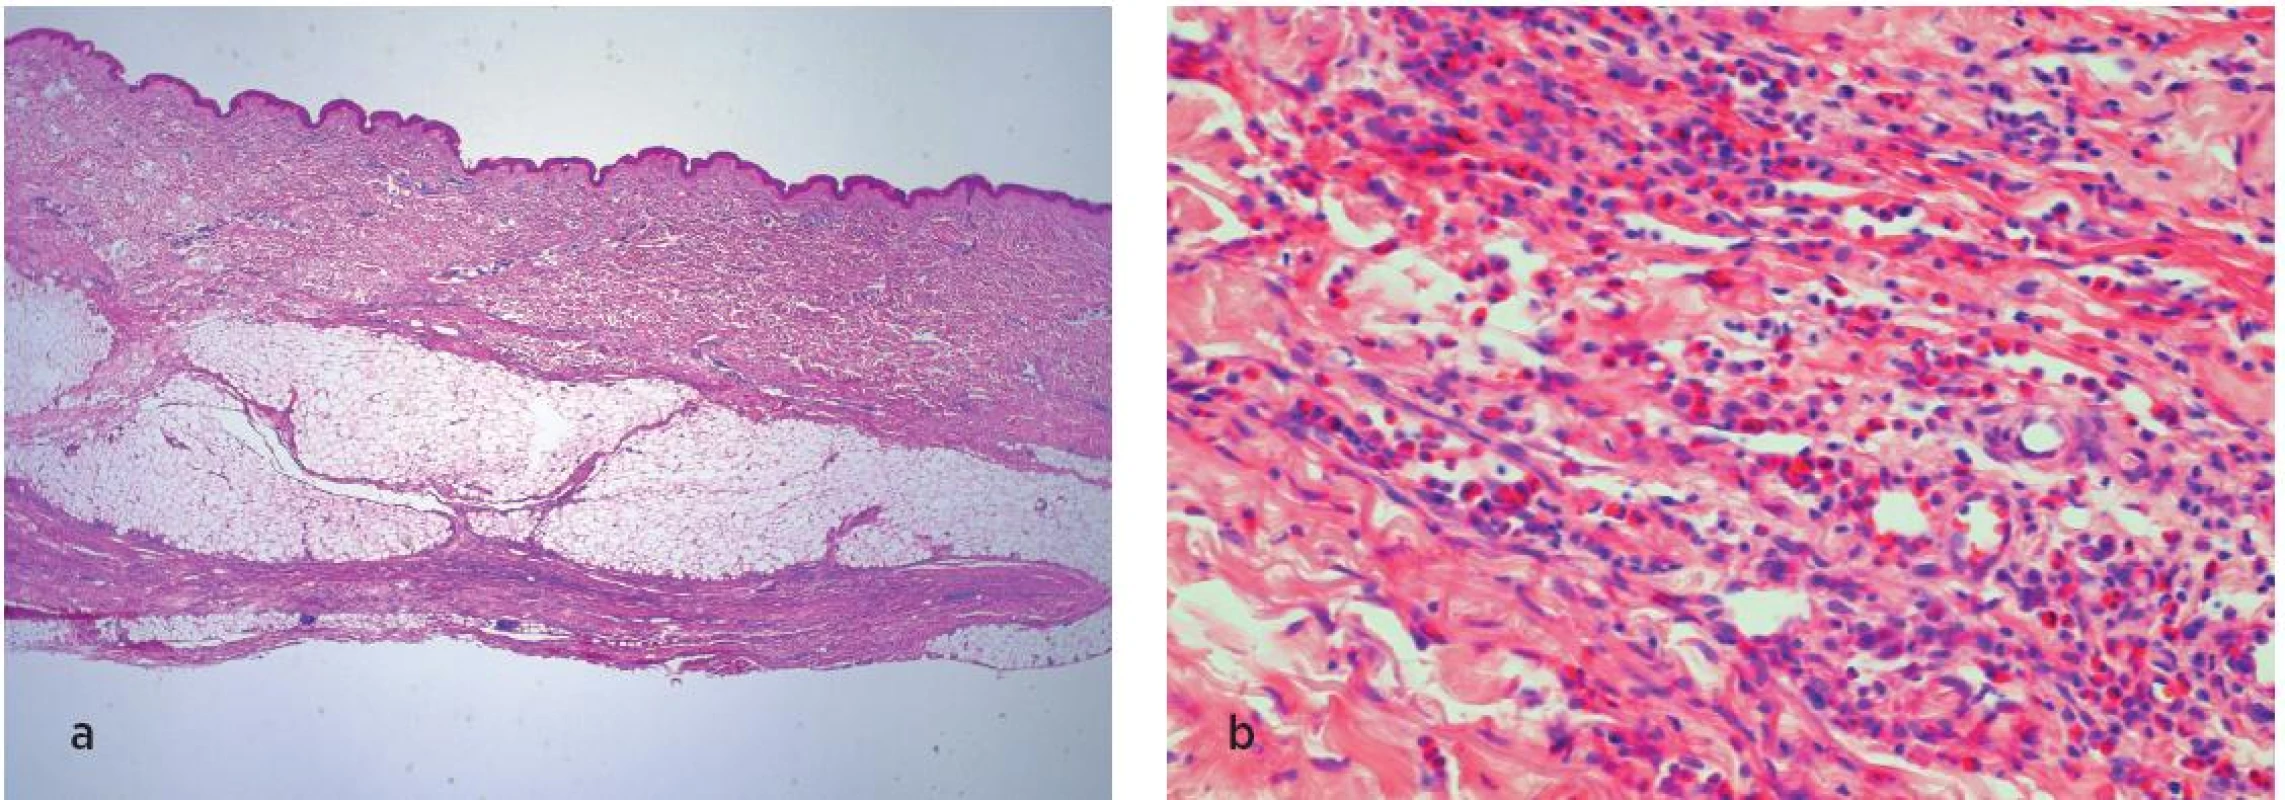 Histologické vyšetření kůže, podkoží a svalů. V přehledném obraze (a) je patrná atrofická epidermis, rozšířené fibrotizované korium s lymfocytárními zánětlivými infiltráty. V detailu (b) je patrná i příměs eozinofilů v infiltrátech.